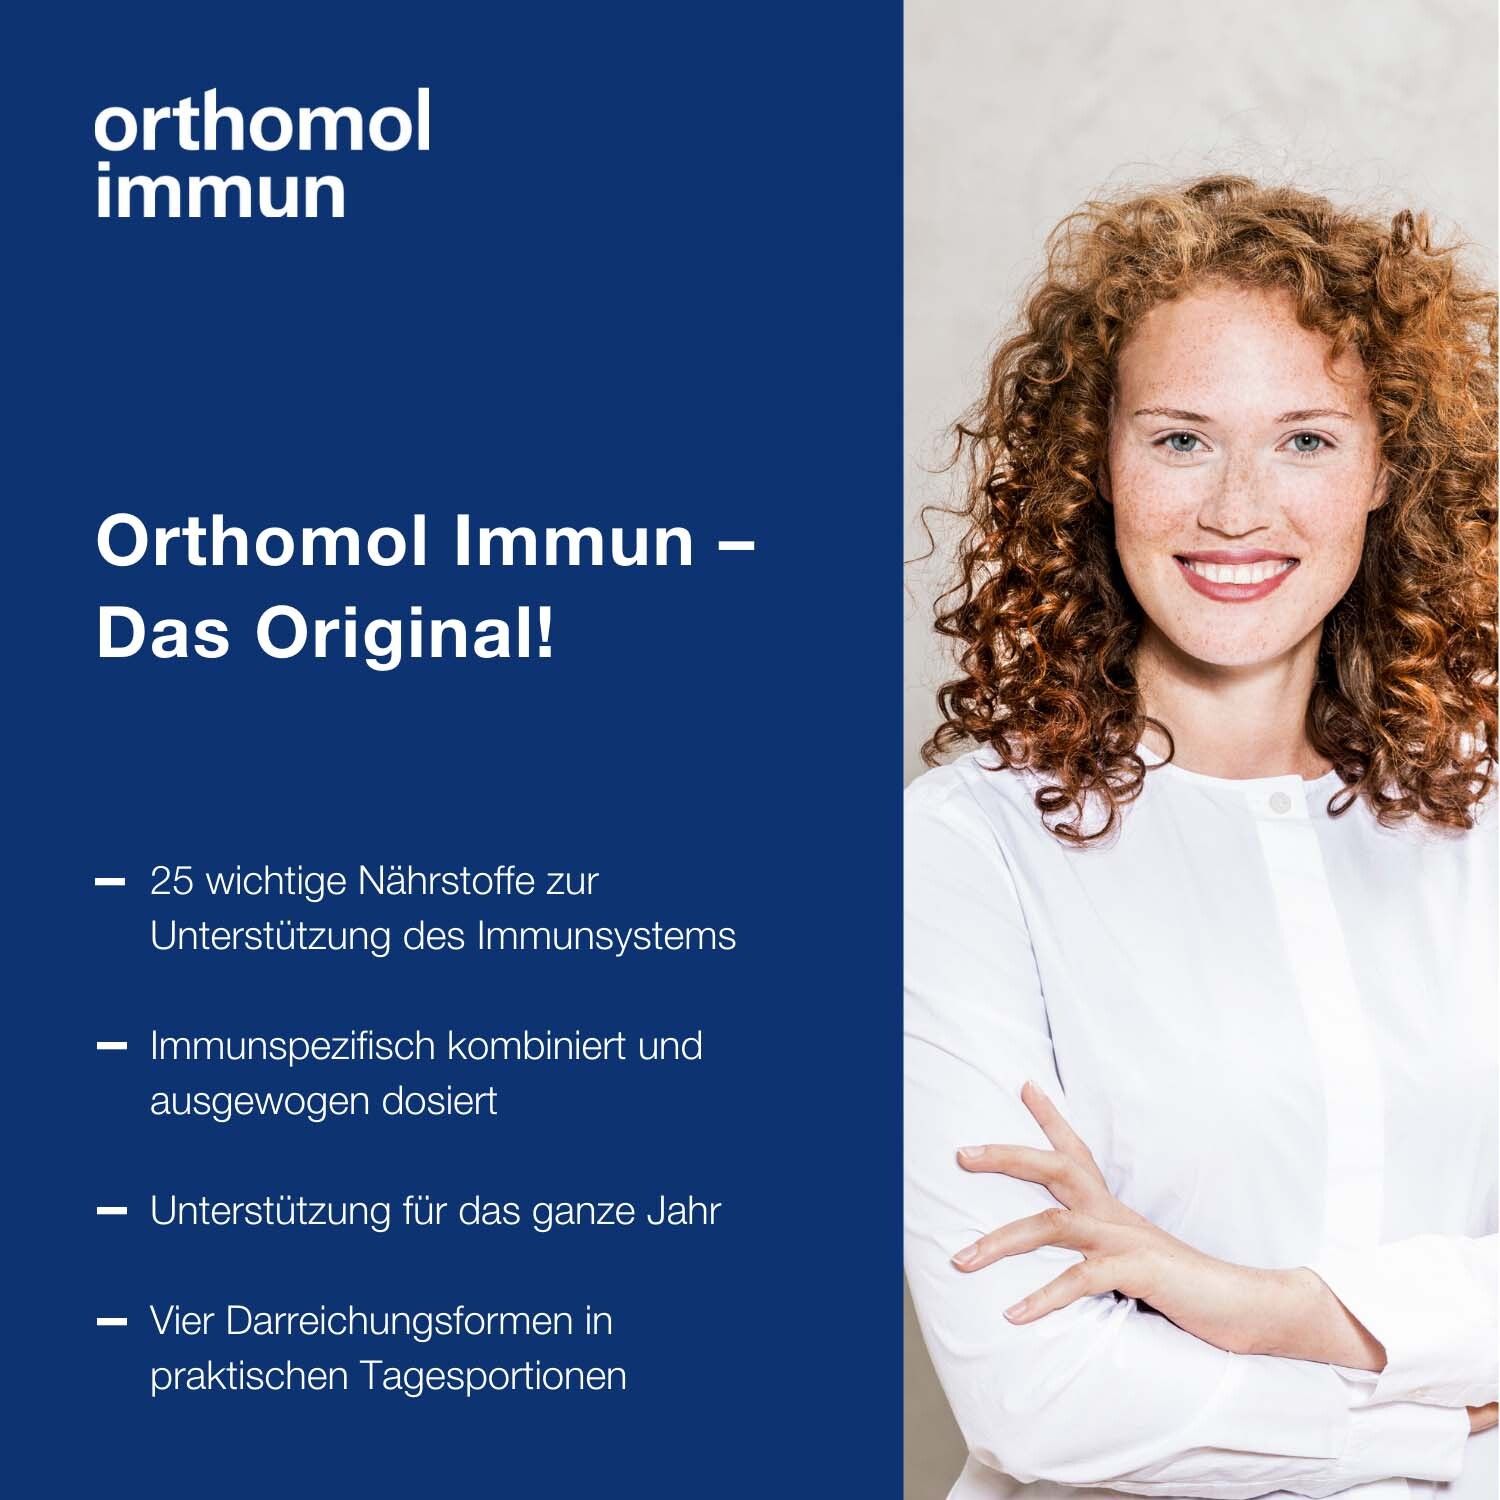 Orthomol Immun - Mikronährstoffe zur Unterstützung des Immunsystems - mit Vitamin C, Vitamin D und Zink - Direktgranulat Menthol-Himbeere